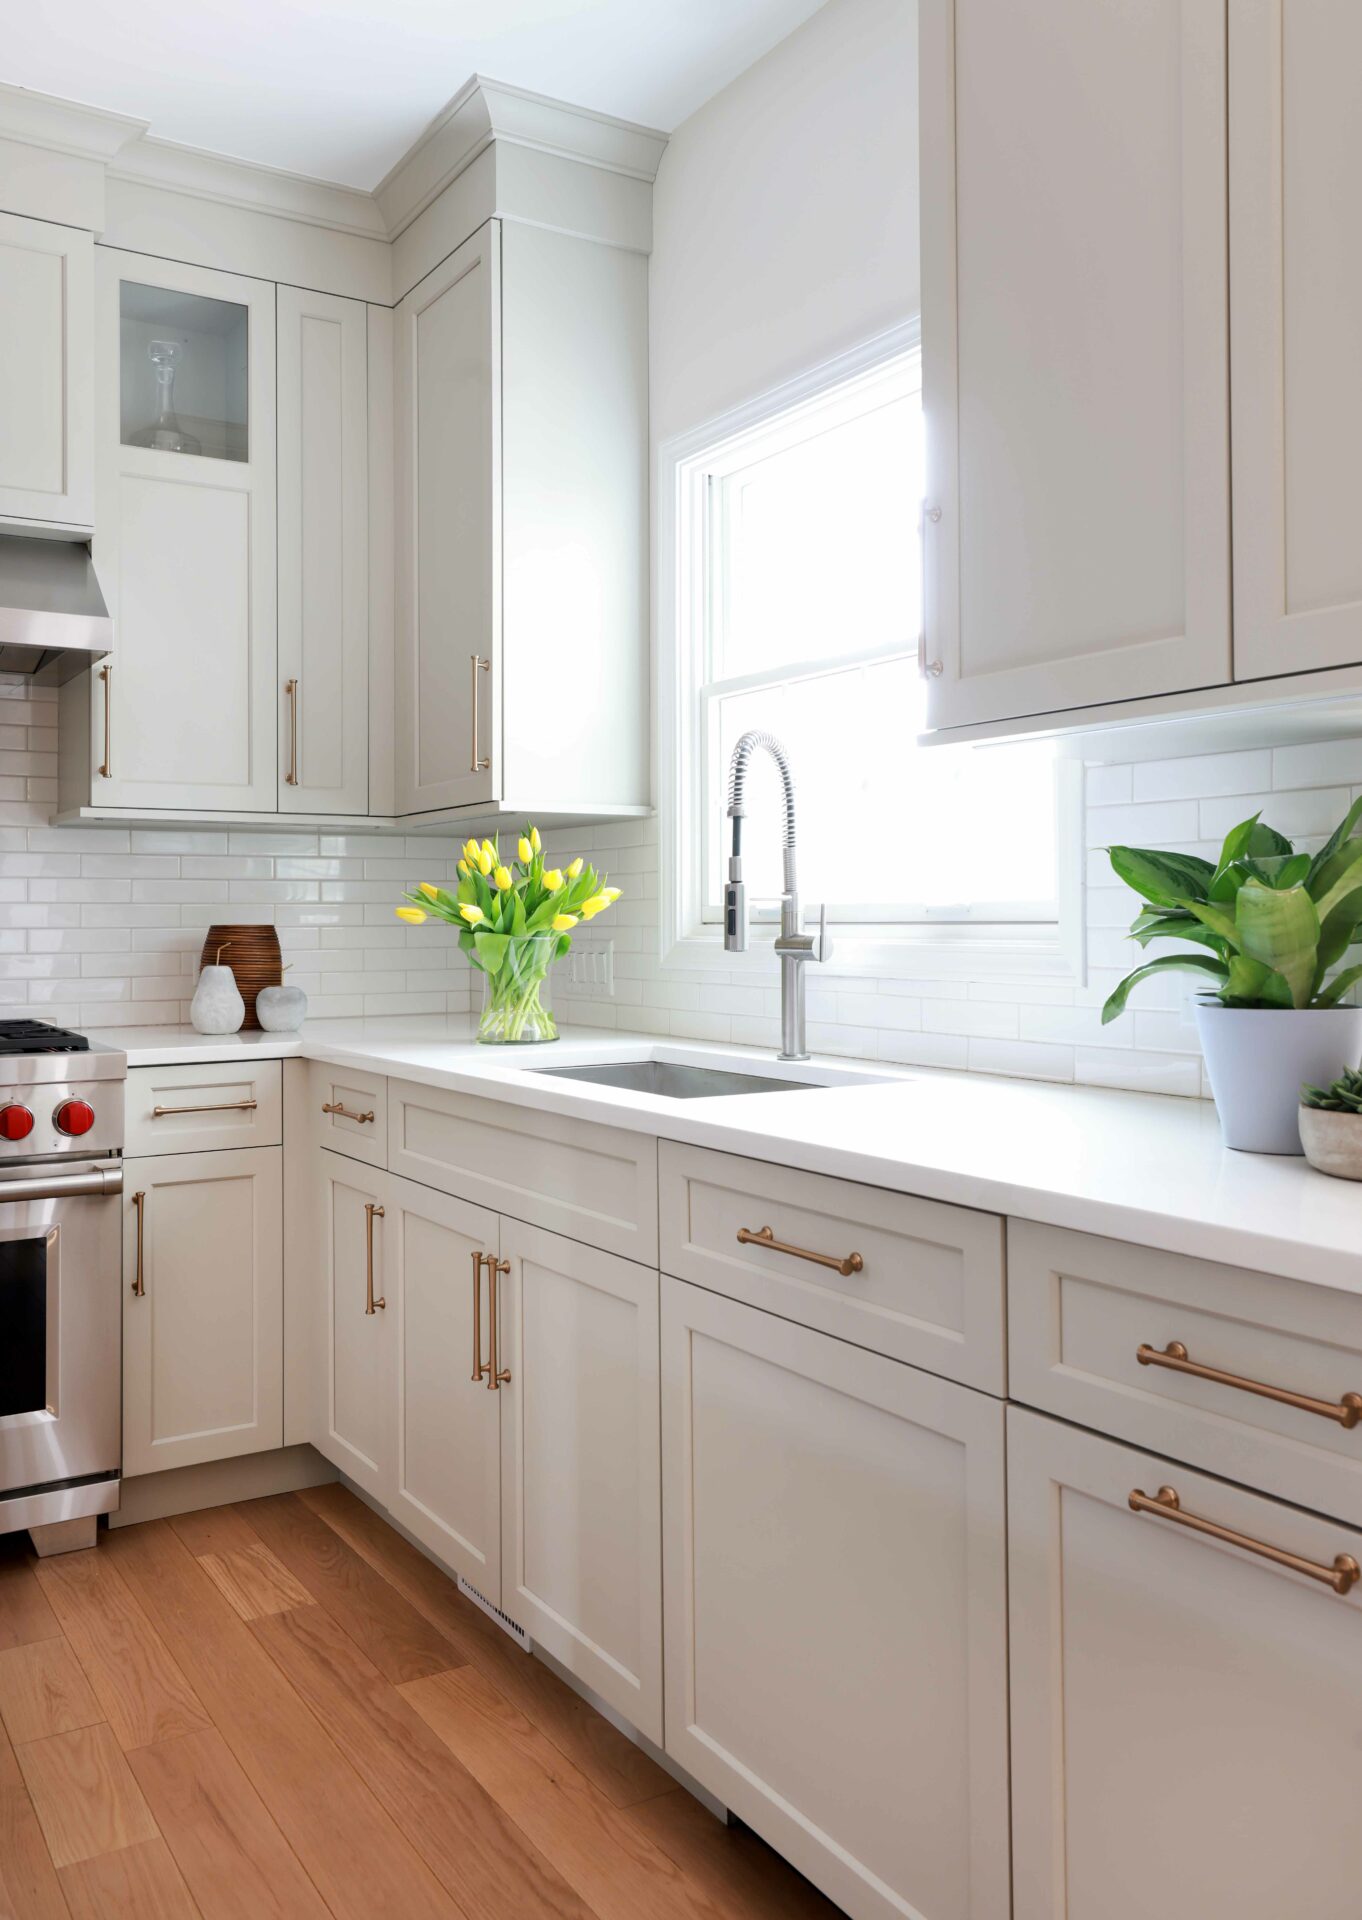 Warm white kitchen cabinets with undermount sink